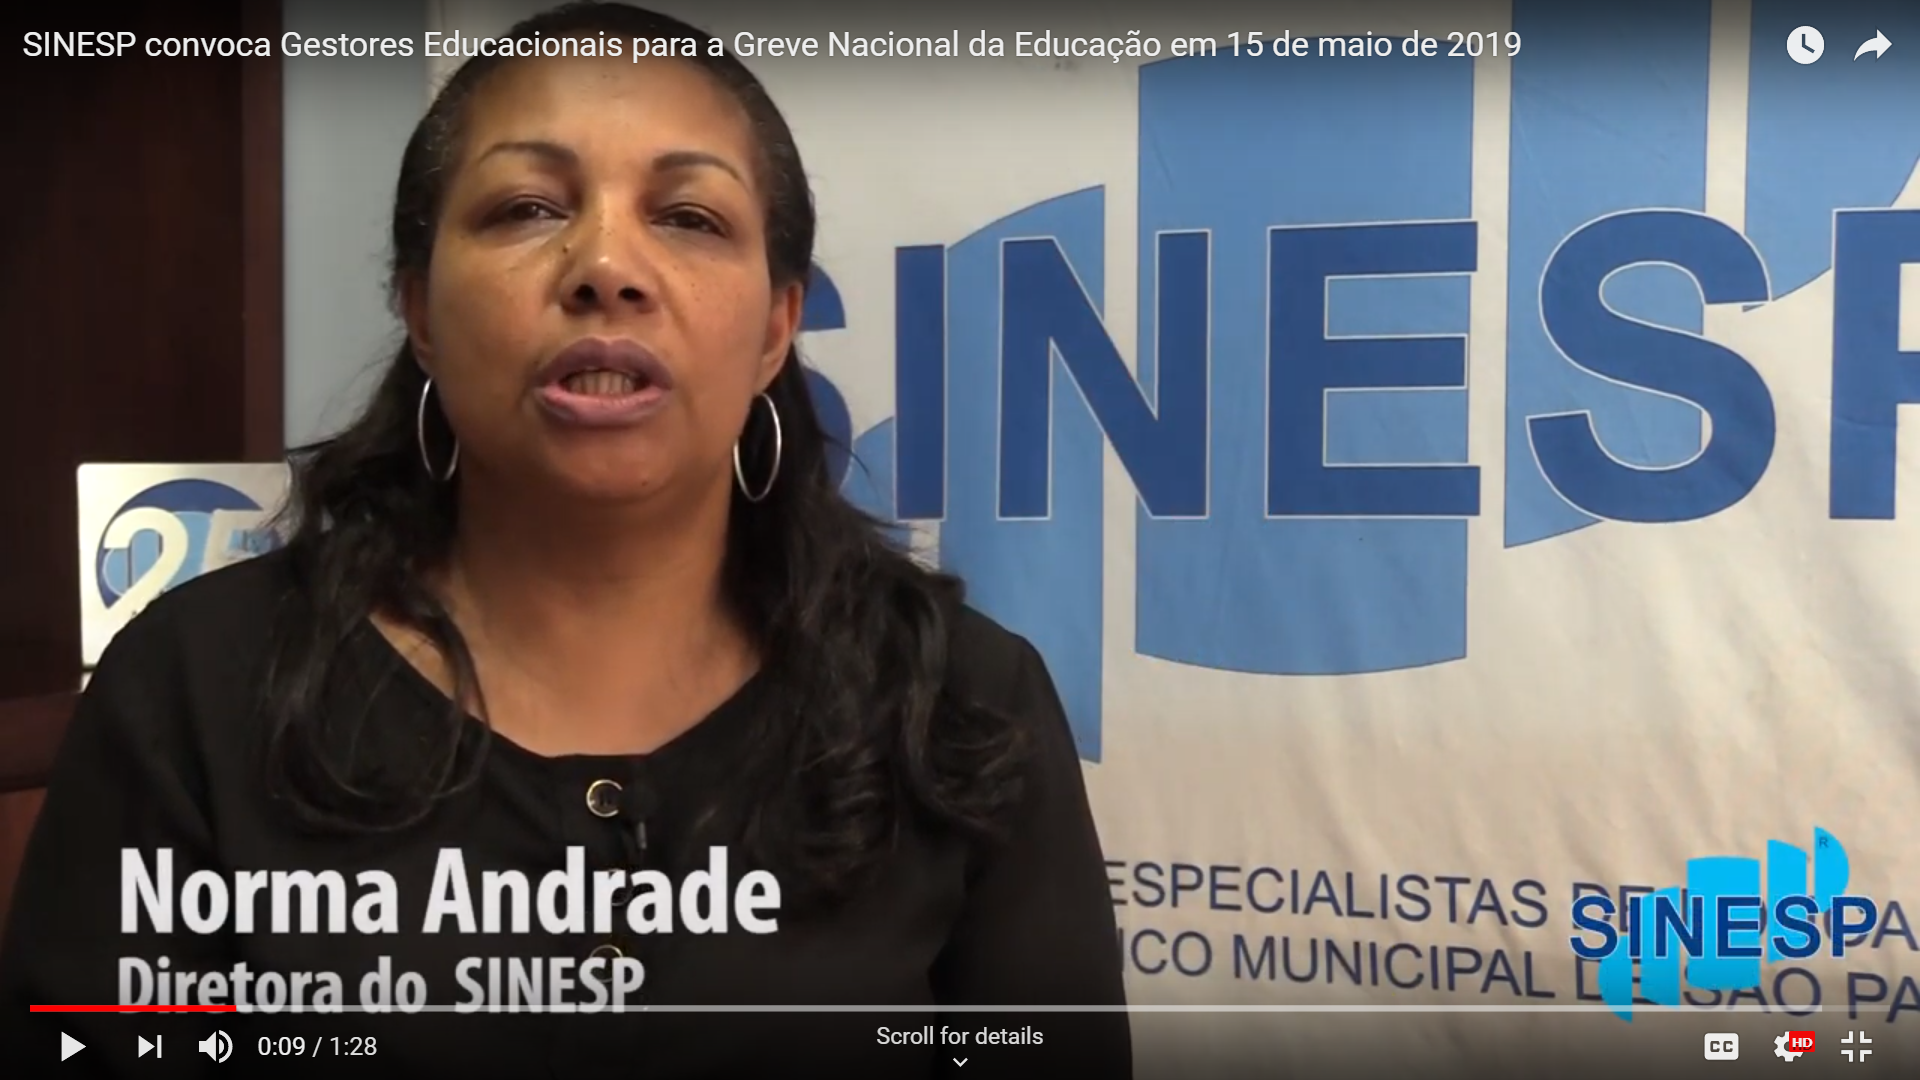 SINESP convoca Gestores Educacionais para a Greve Nacional da Educação em 15 de maio de 2019